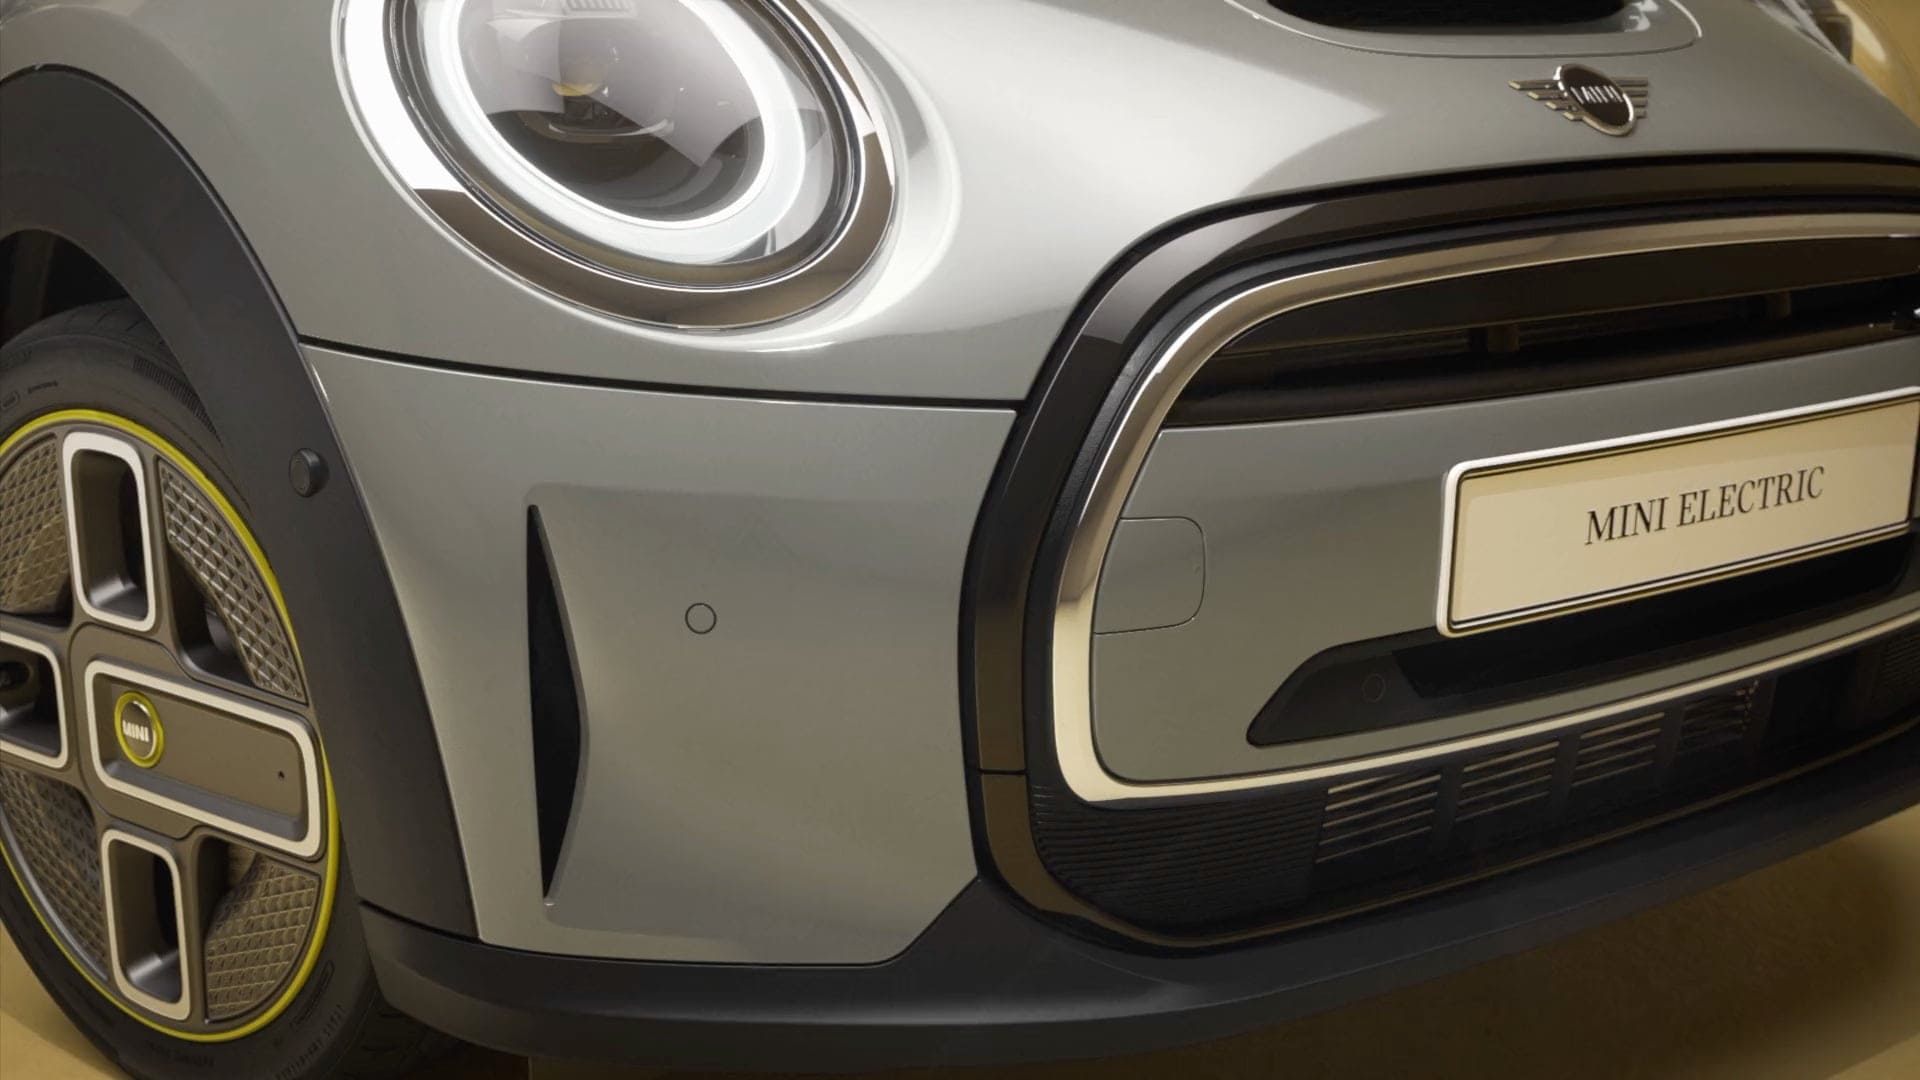 MINI Cooper S E Hatch 3 Portas - mini totalmente elétrico - vista lateral, prata.